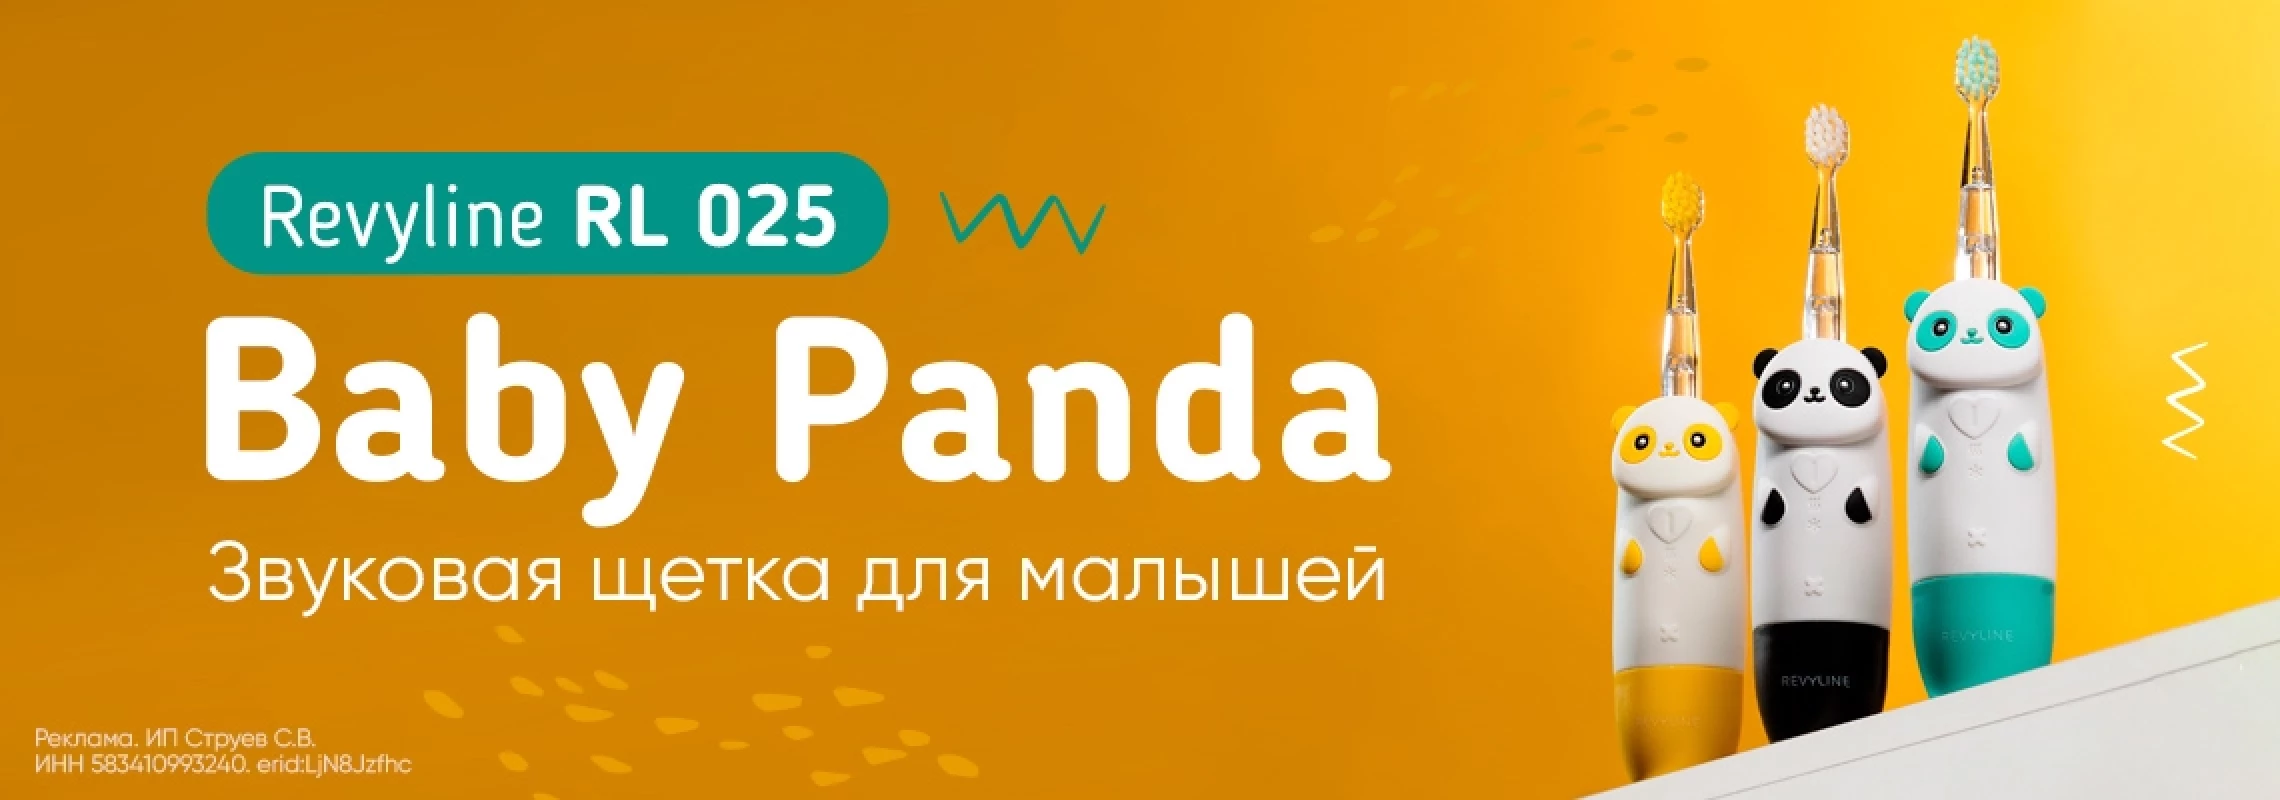 025 panda